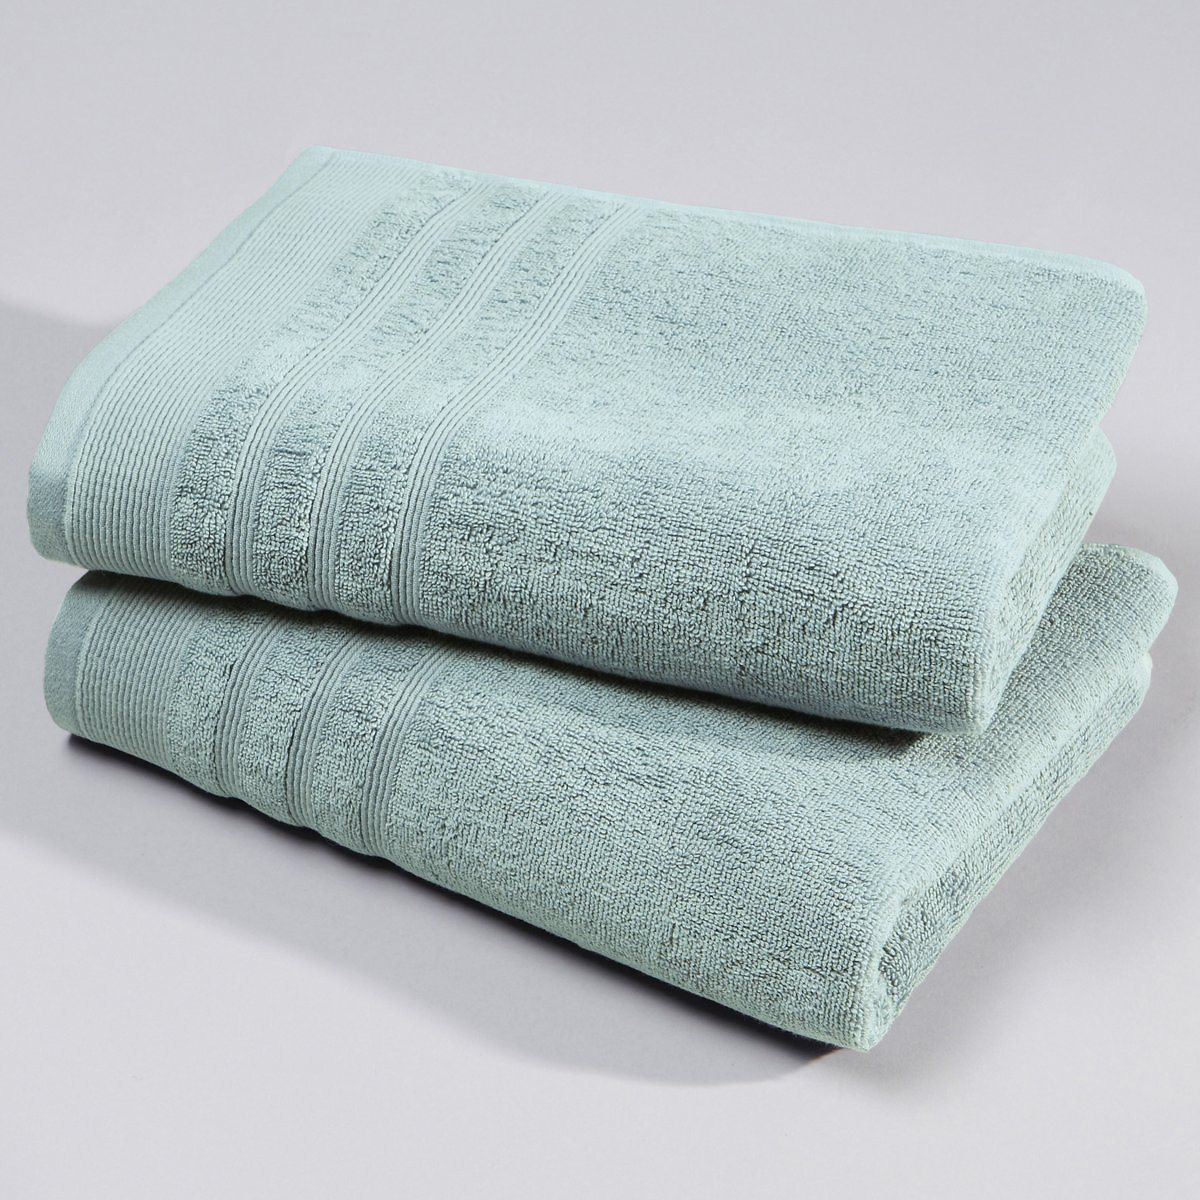 Хлопчатобумажное полотенце. Best quality набор полотенец. Как выглядит хлопчатое полотенце. Цвет натурального хлопкового полотенца не крашеный.